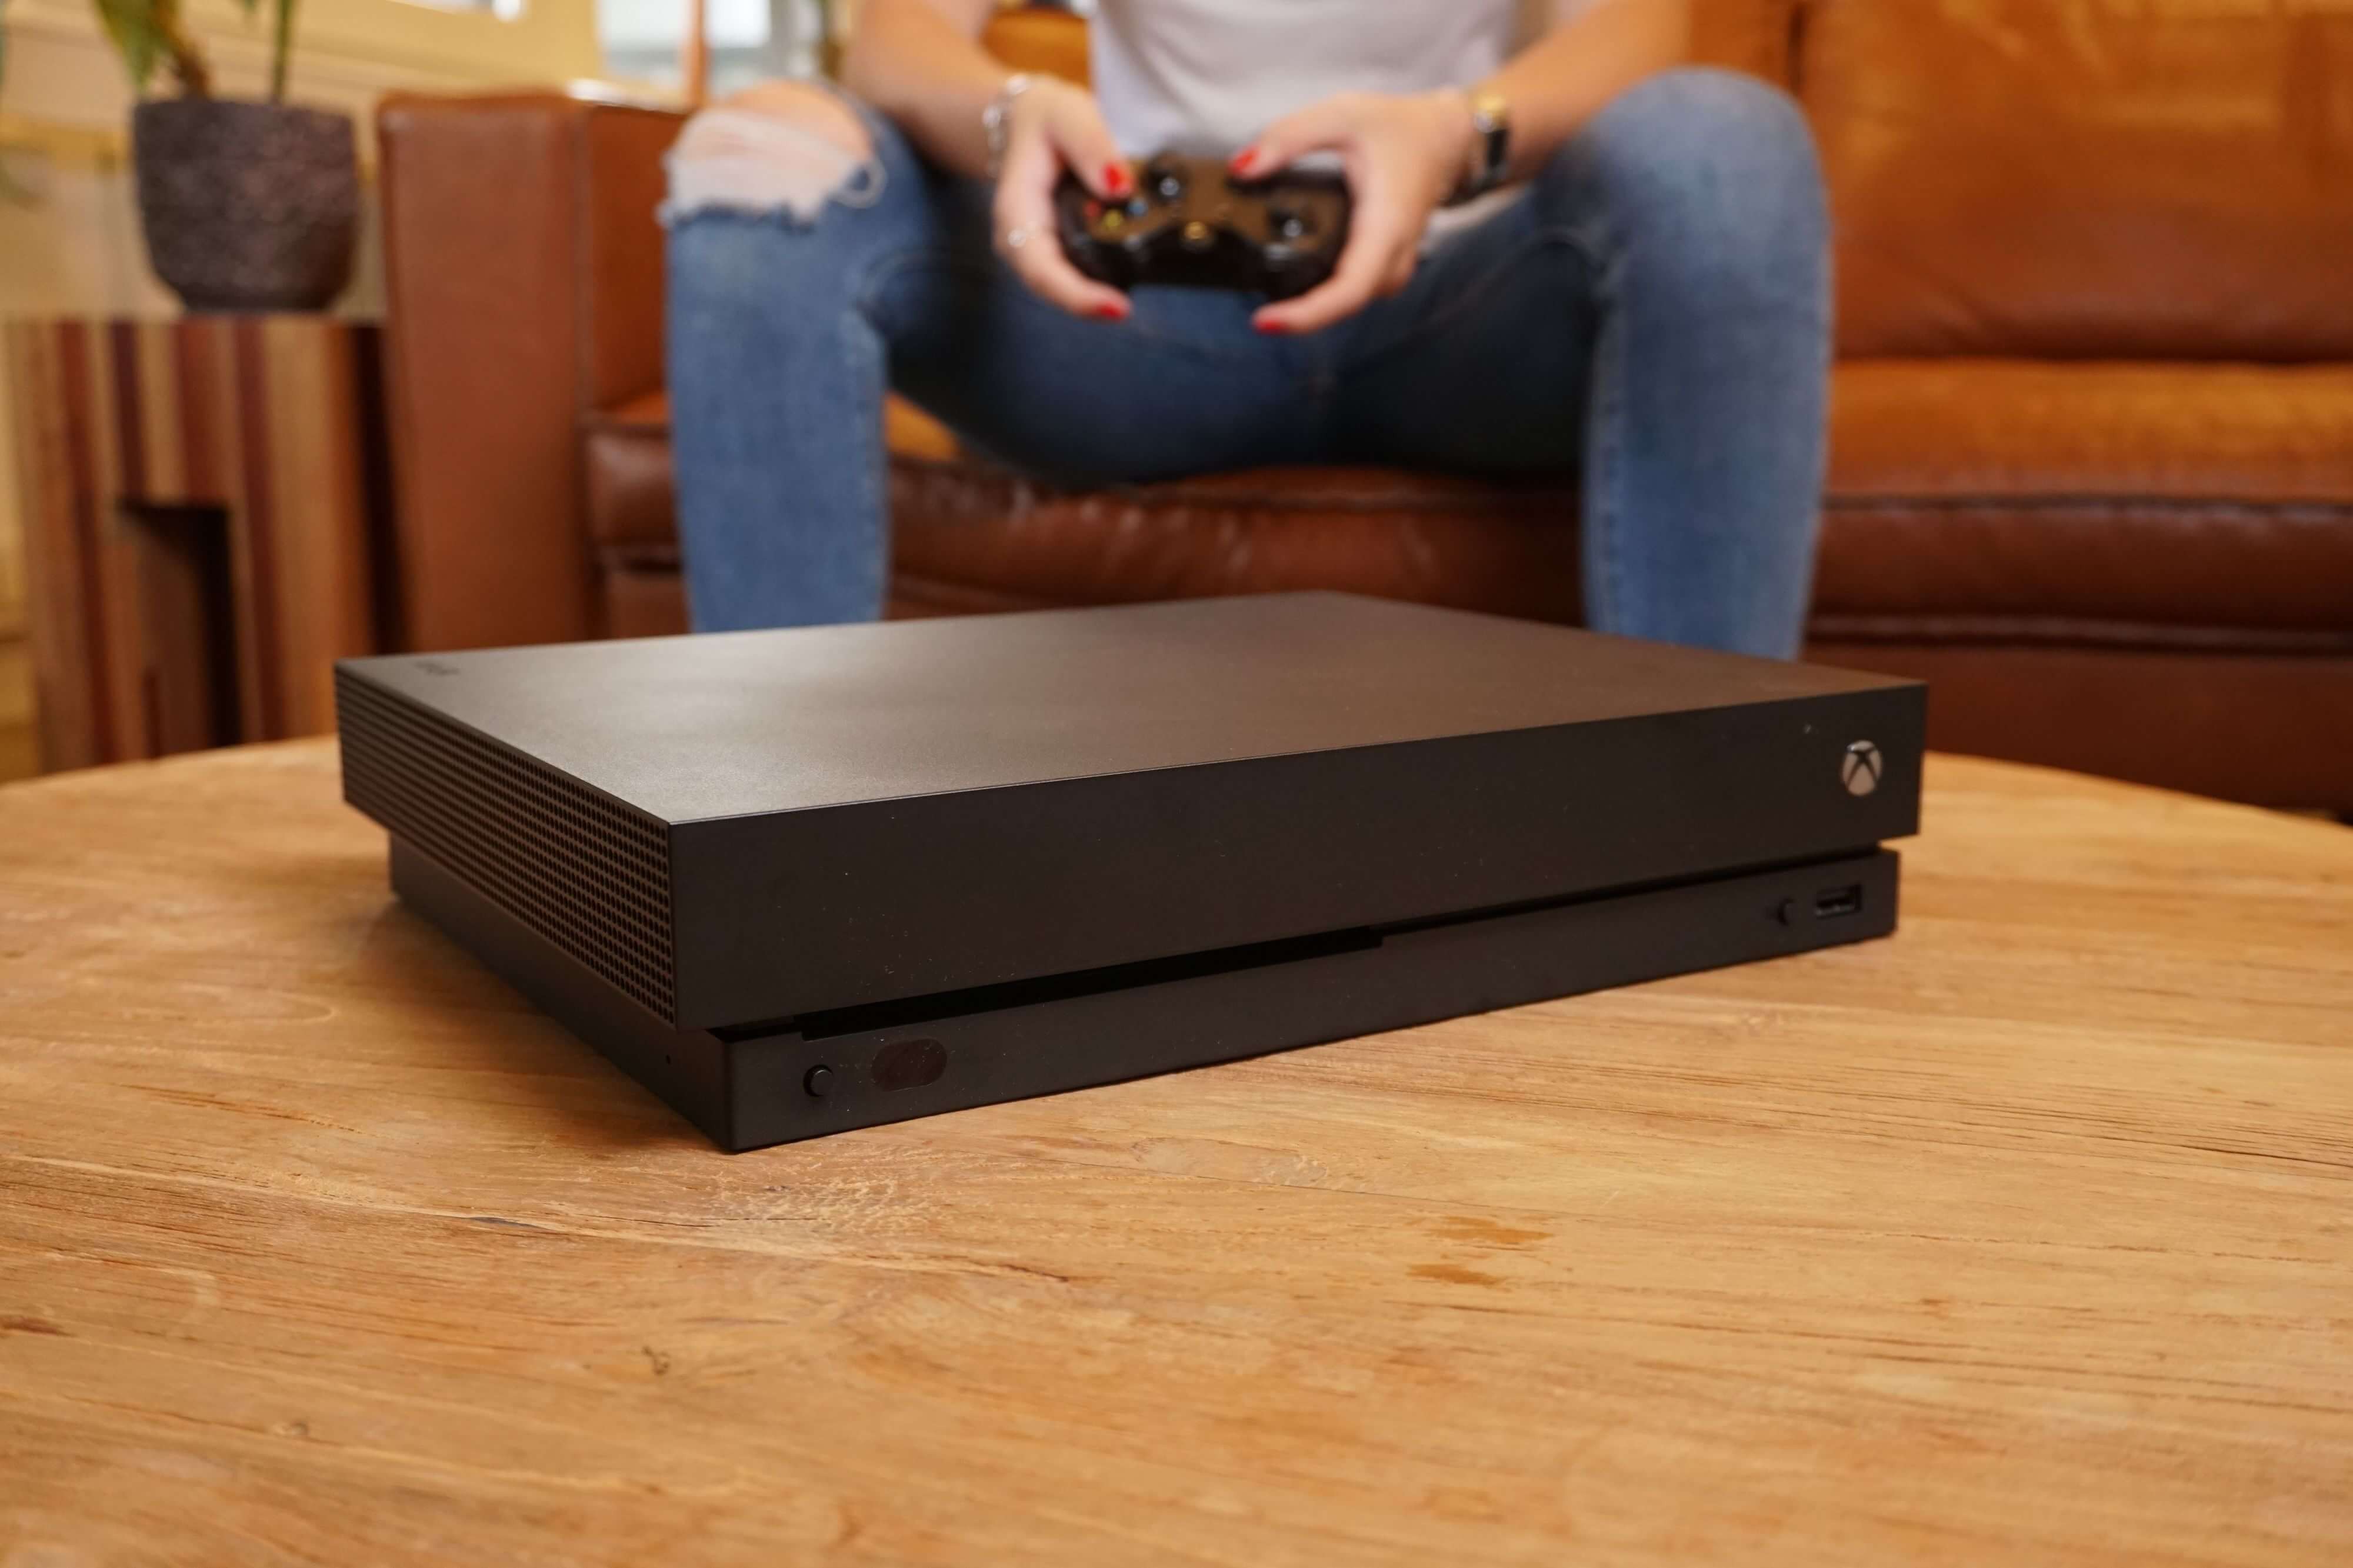 Xbox One X Console - 1TB [Complete] | Xbox One Hardware | RetroXboxKopen.nl